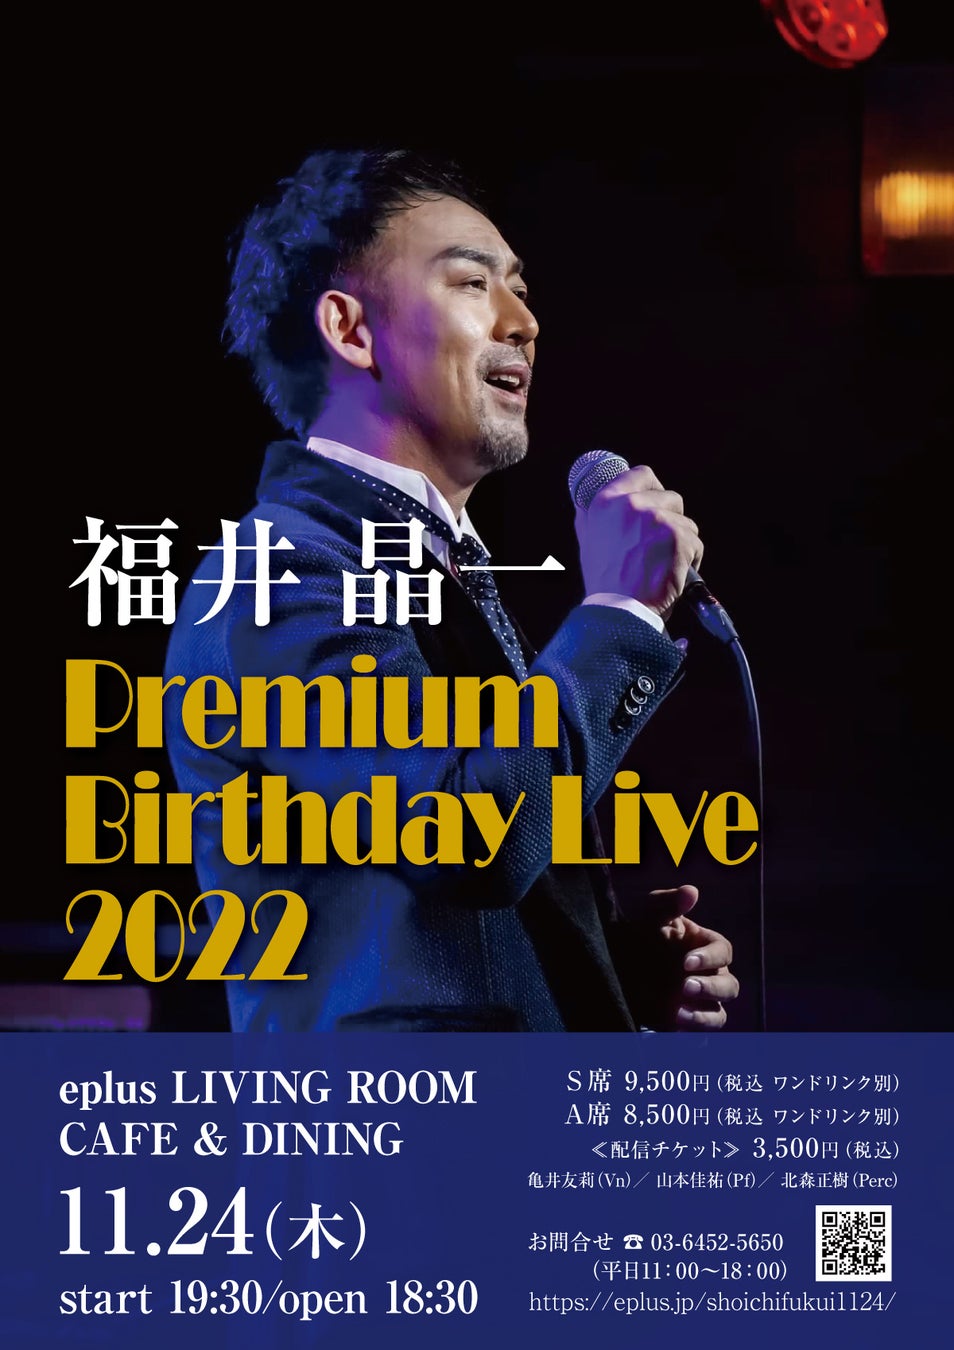 ミュージカル俳優・福井晶一による～Premium Birthday Live 2022～eplus LIVING ROOM CAFE&DININGで開催決定!!